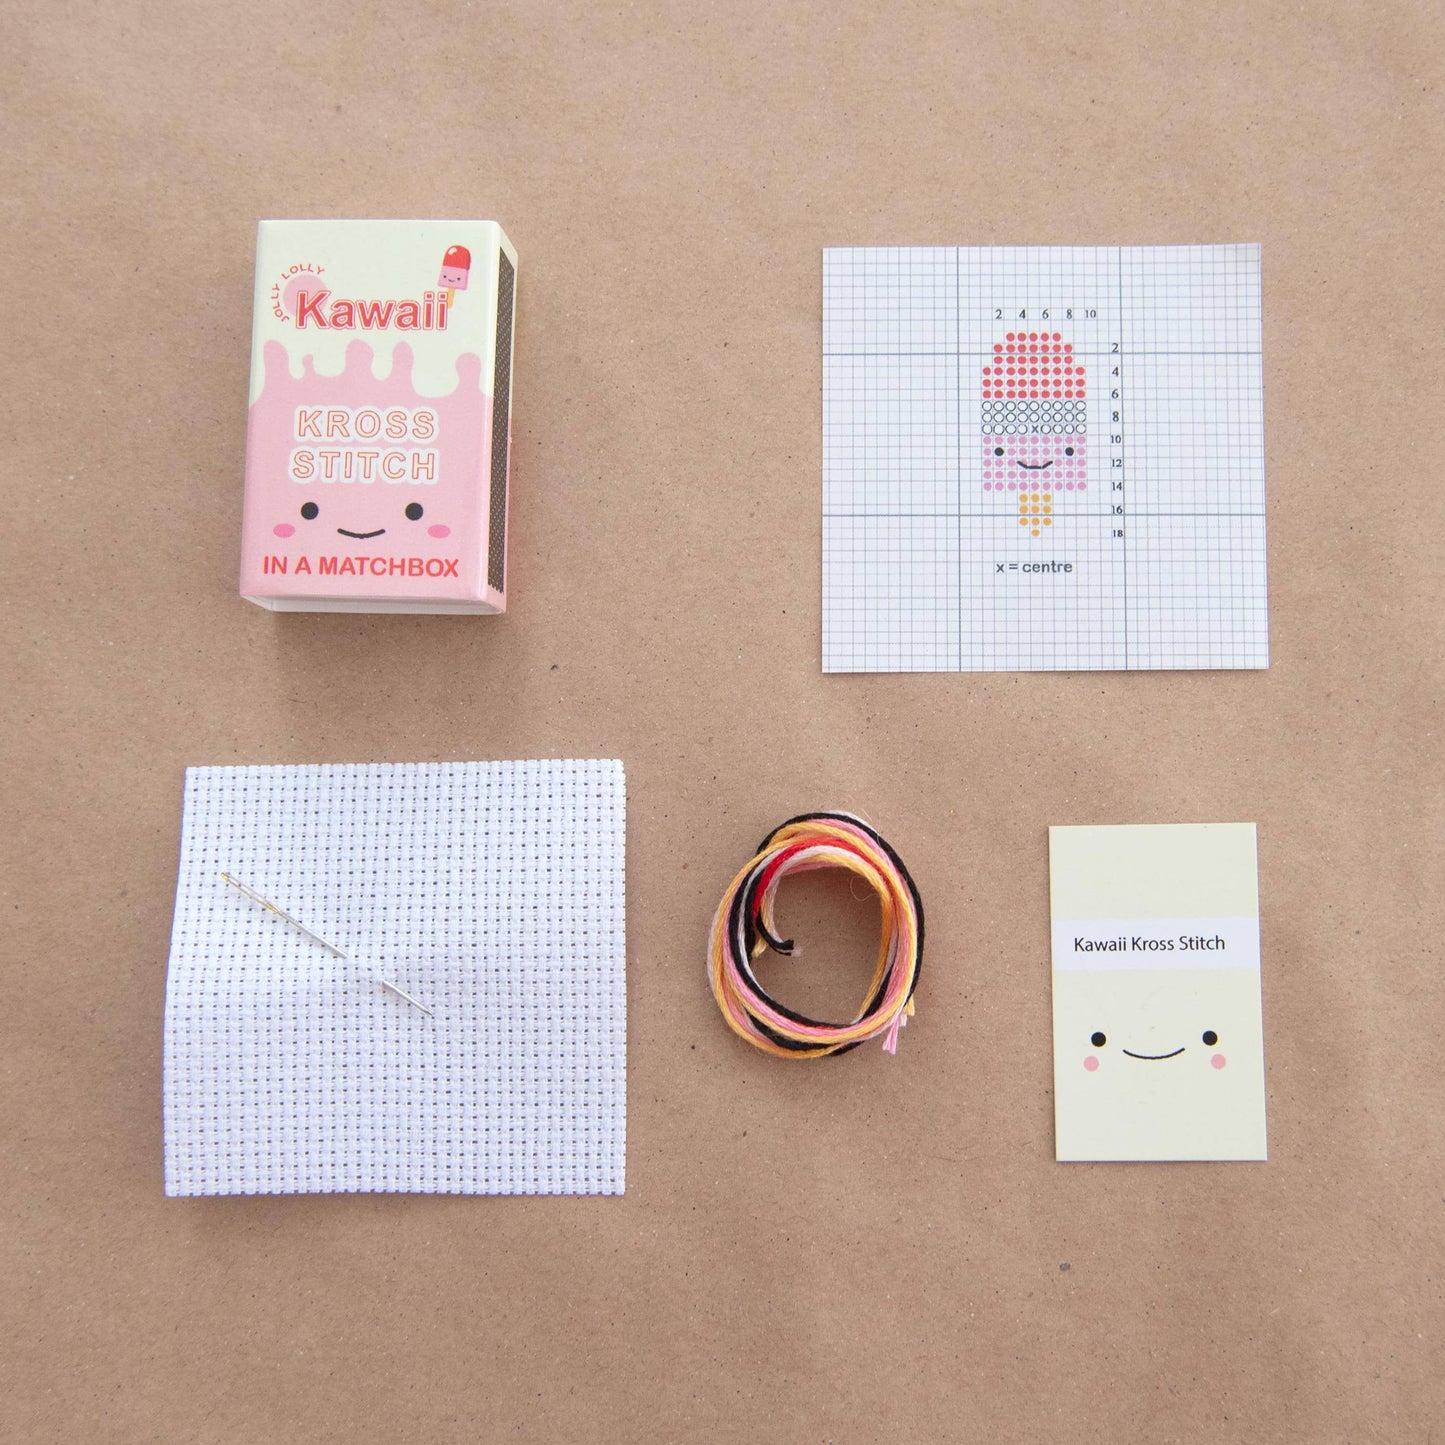 Kawaii Ice Lolly Mini Cross Stitch Kit In A Matchbox